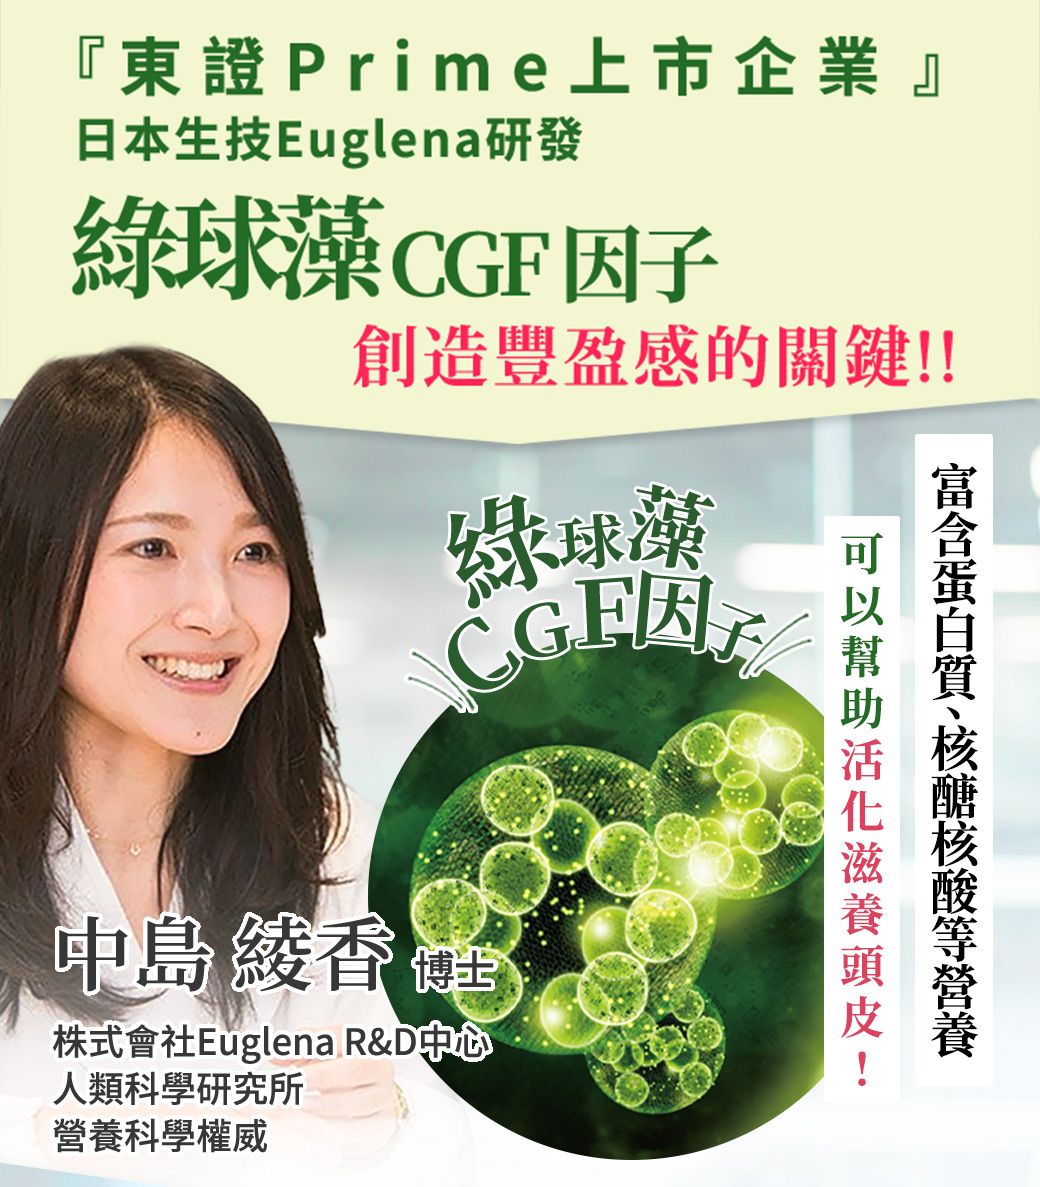 『東證Prime上市企業』日本生技Euglena研發綠球 CGF 因子創造豐盈感的關鍵!中島 全株式會社Euglena R&D中心人類科學研究所科學權威綠球藻!營養